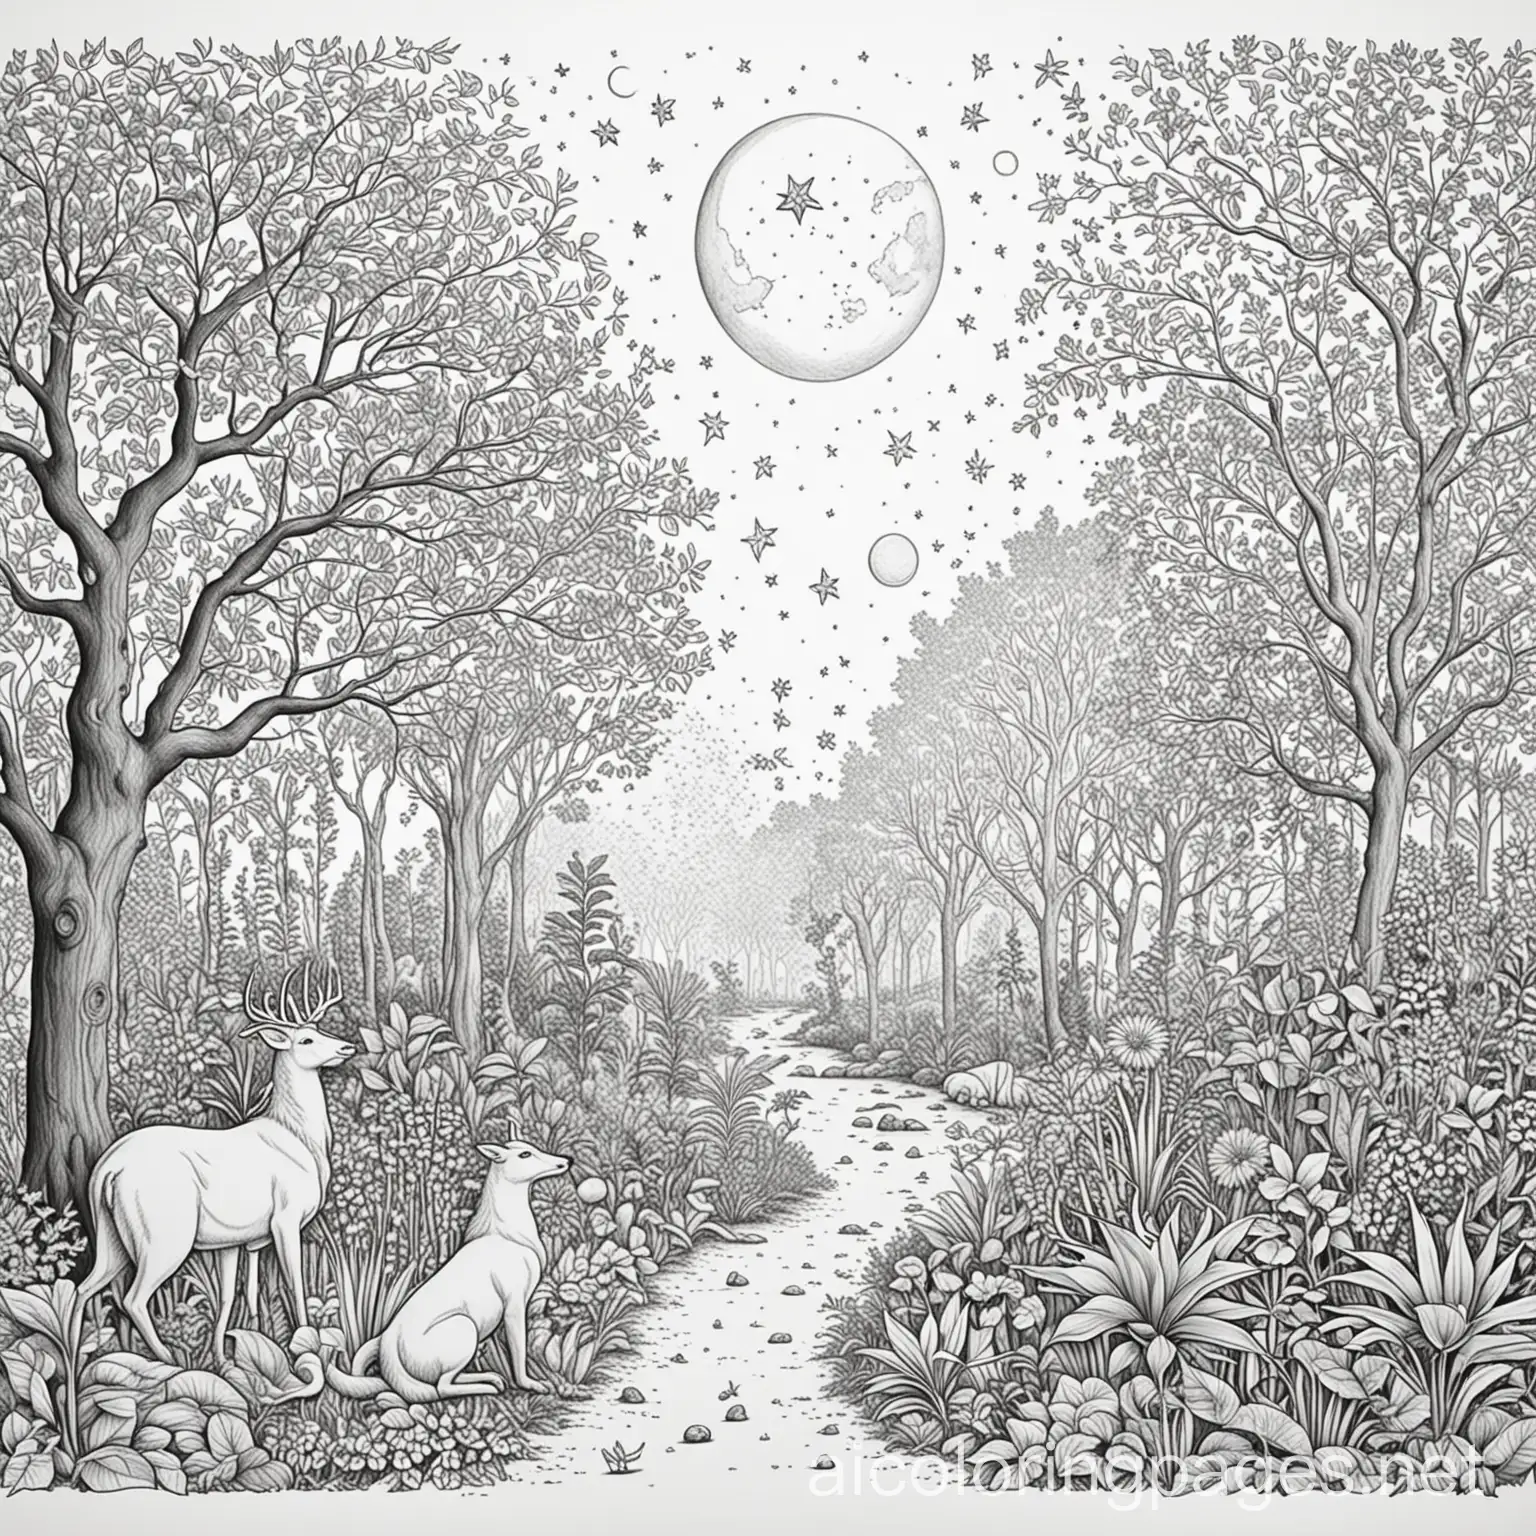 Garden-of-Eden-Illustration-Earth-Sun-Moon-Stars-Animals-Plants-Adam-and-Eve